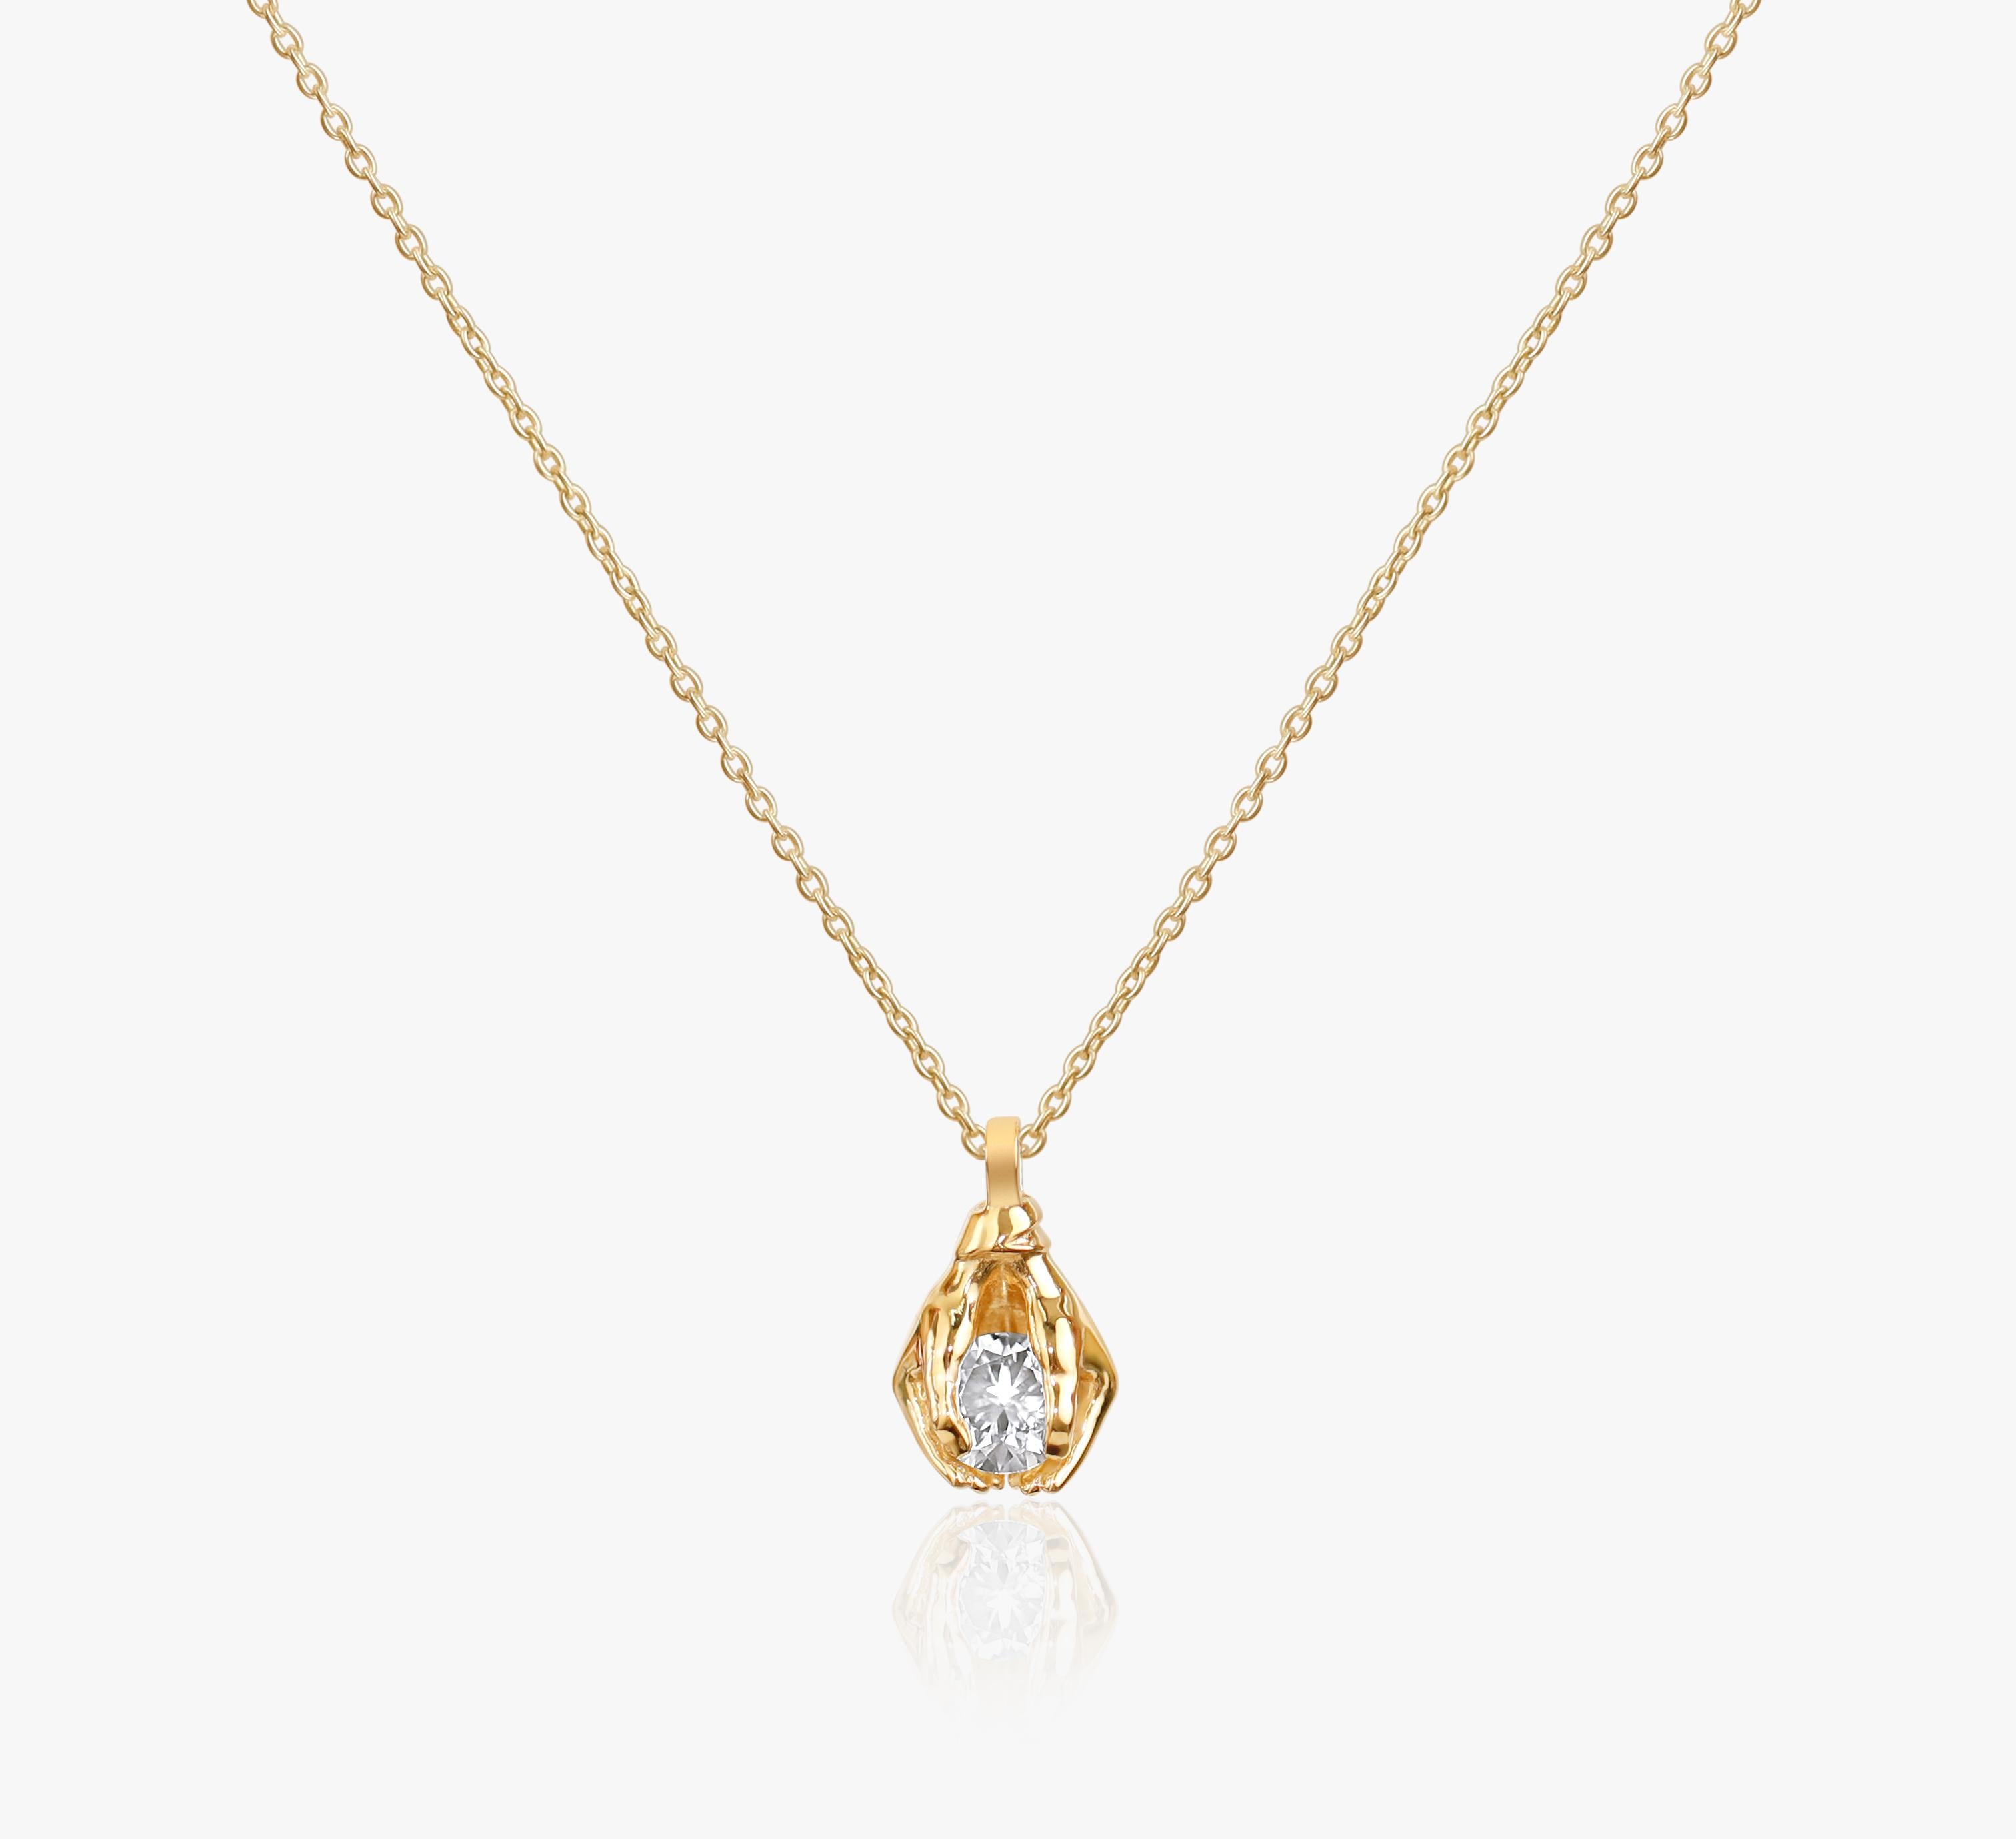 GIA-Bericht zertifiziert 1.25 Karat F VS Rundschliff Diamant-Anhänger-Halskette

Erhältlich in 18k Gelbgold.

Das gleiche Design kann auch mit anderen Edelsteinen auf Anfrage hergestellt werden.

Einzelheiten zum Produkt:

- Massiv Gold 18k gelb 

-